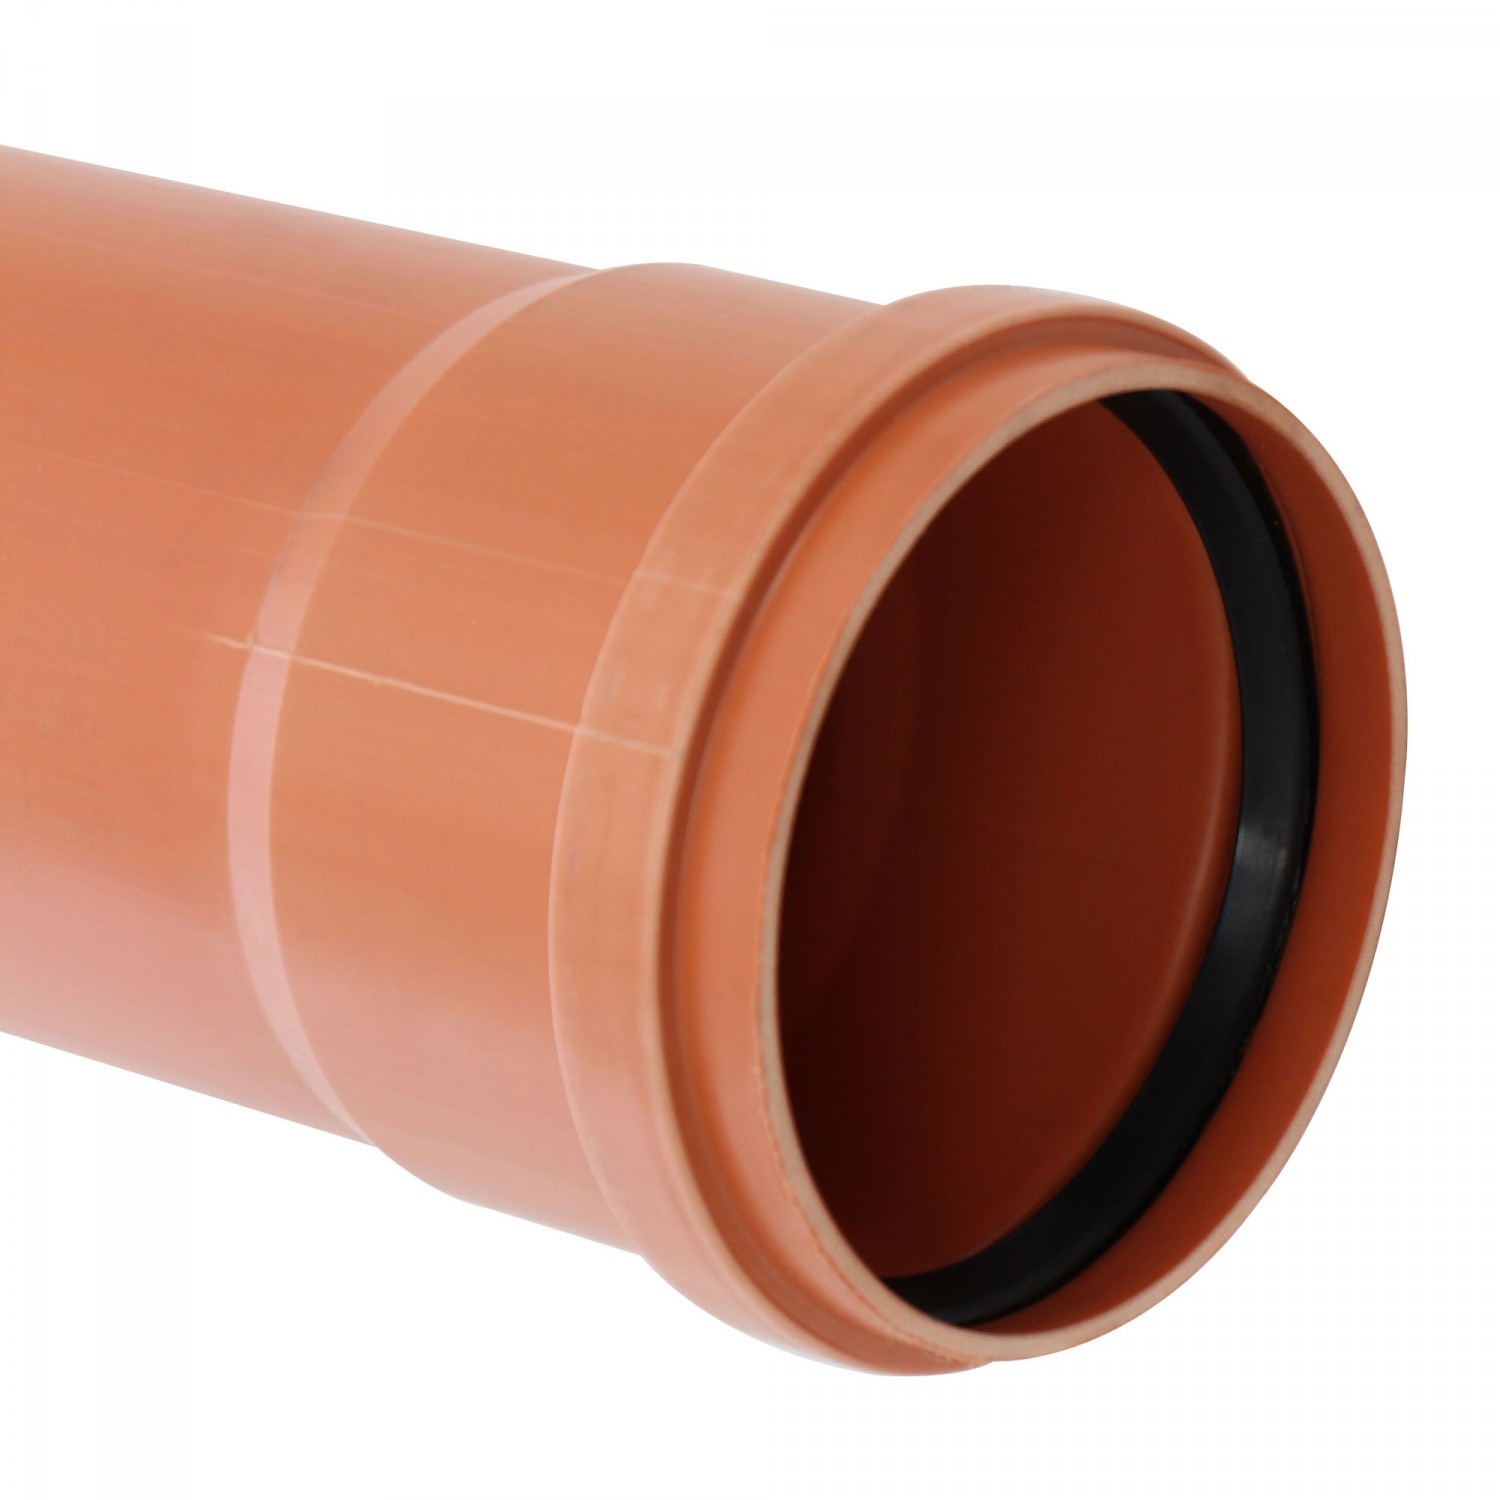 Teava PVC pentru canalizare exterioara, multistrat, SN4, 125 x 3.2 mm, 3 m